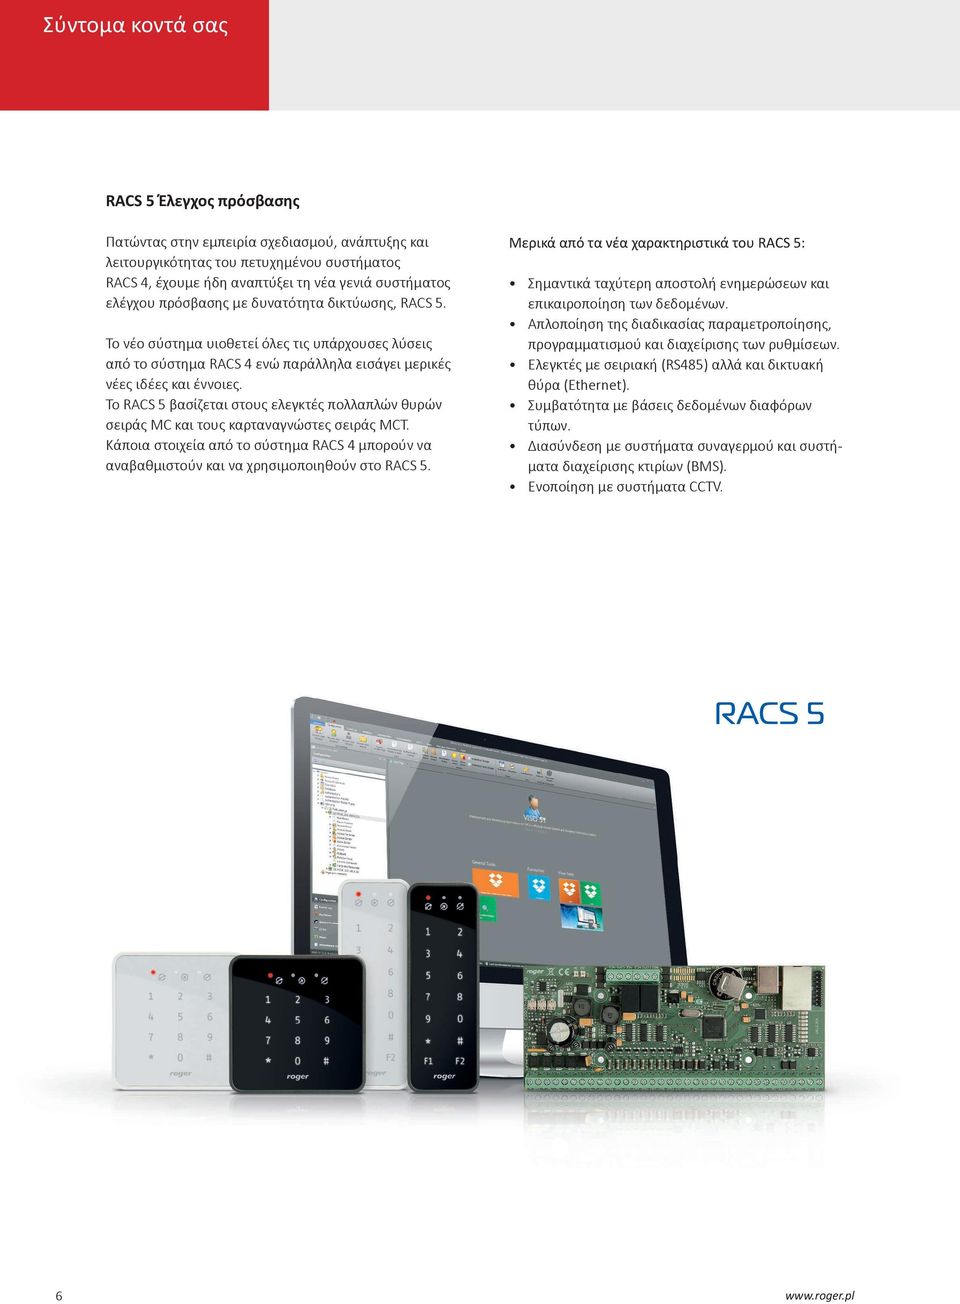 Το RACS 5 βασίζεται στους ελεγκτές πολλαπλών θυρών σειράς MC και τους καρταναγνώστες σειράς MCT. Κάποια στοιχεία από το σύστημα RACS 4 μπορούν να αναβαθμιστούν και να χρησιμοποιηθούν στο RACS 5.